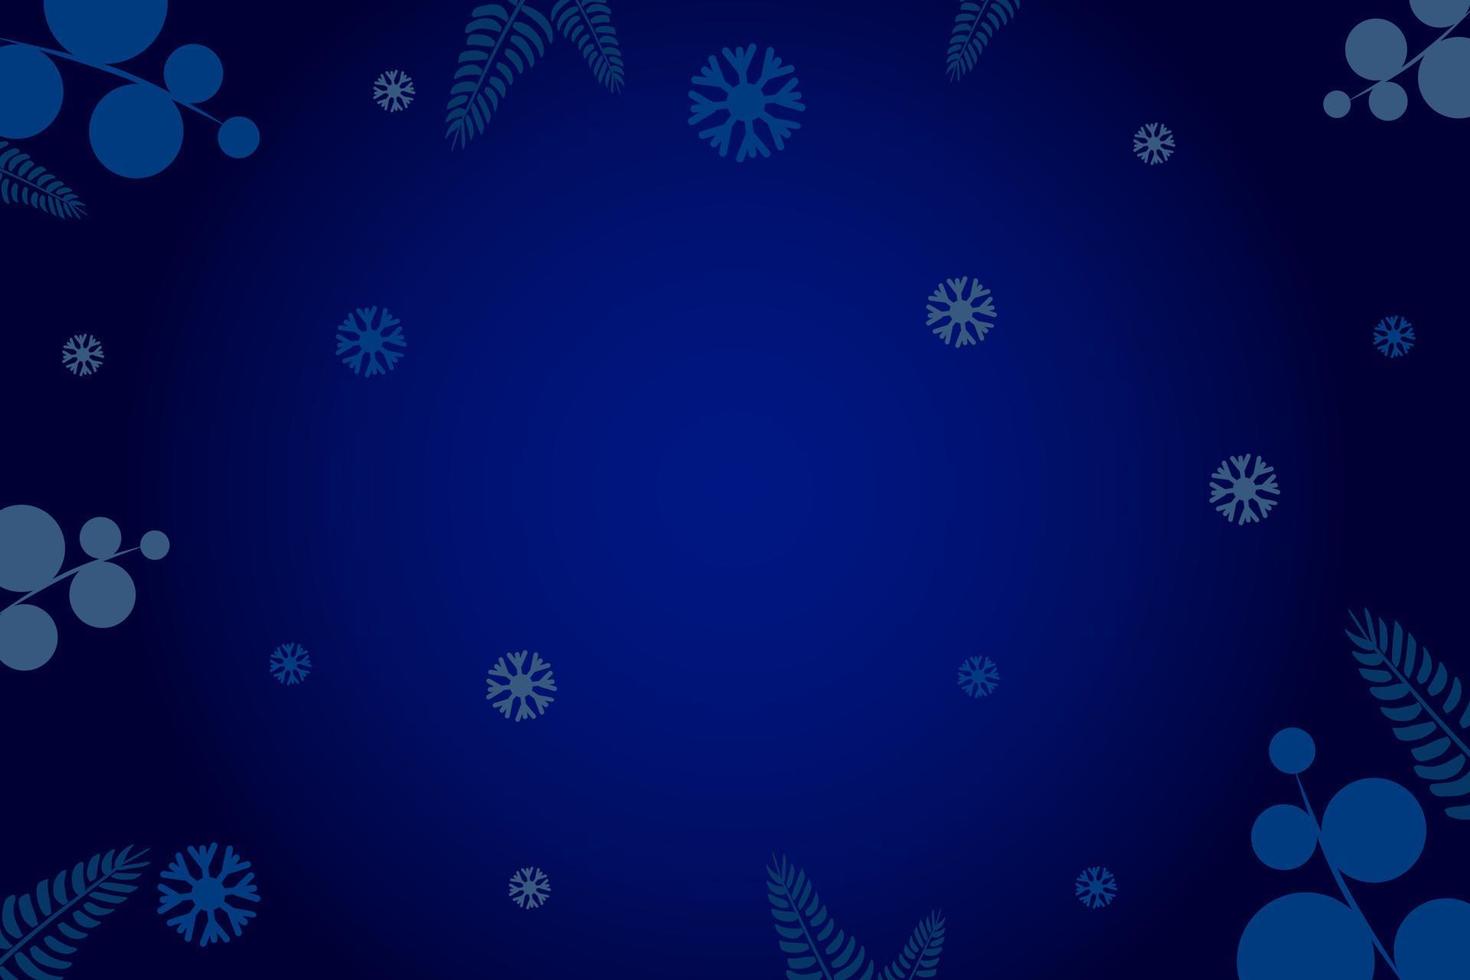 fondos azul oscuro de año nuevo y navidad 2023 para tarjetas de felicitación o invitaciones con patrones discretos. vector para diseños sin texto. eps10